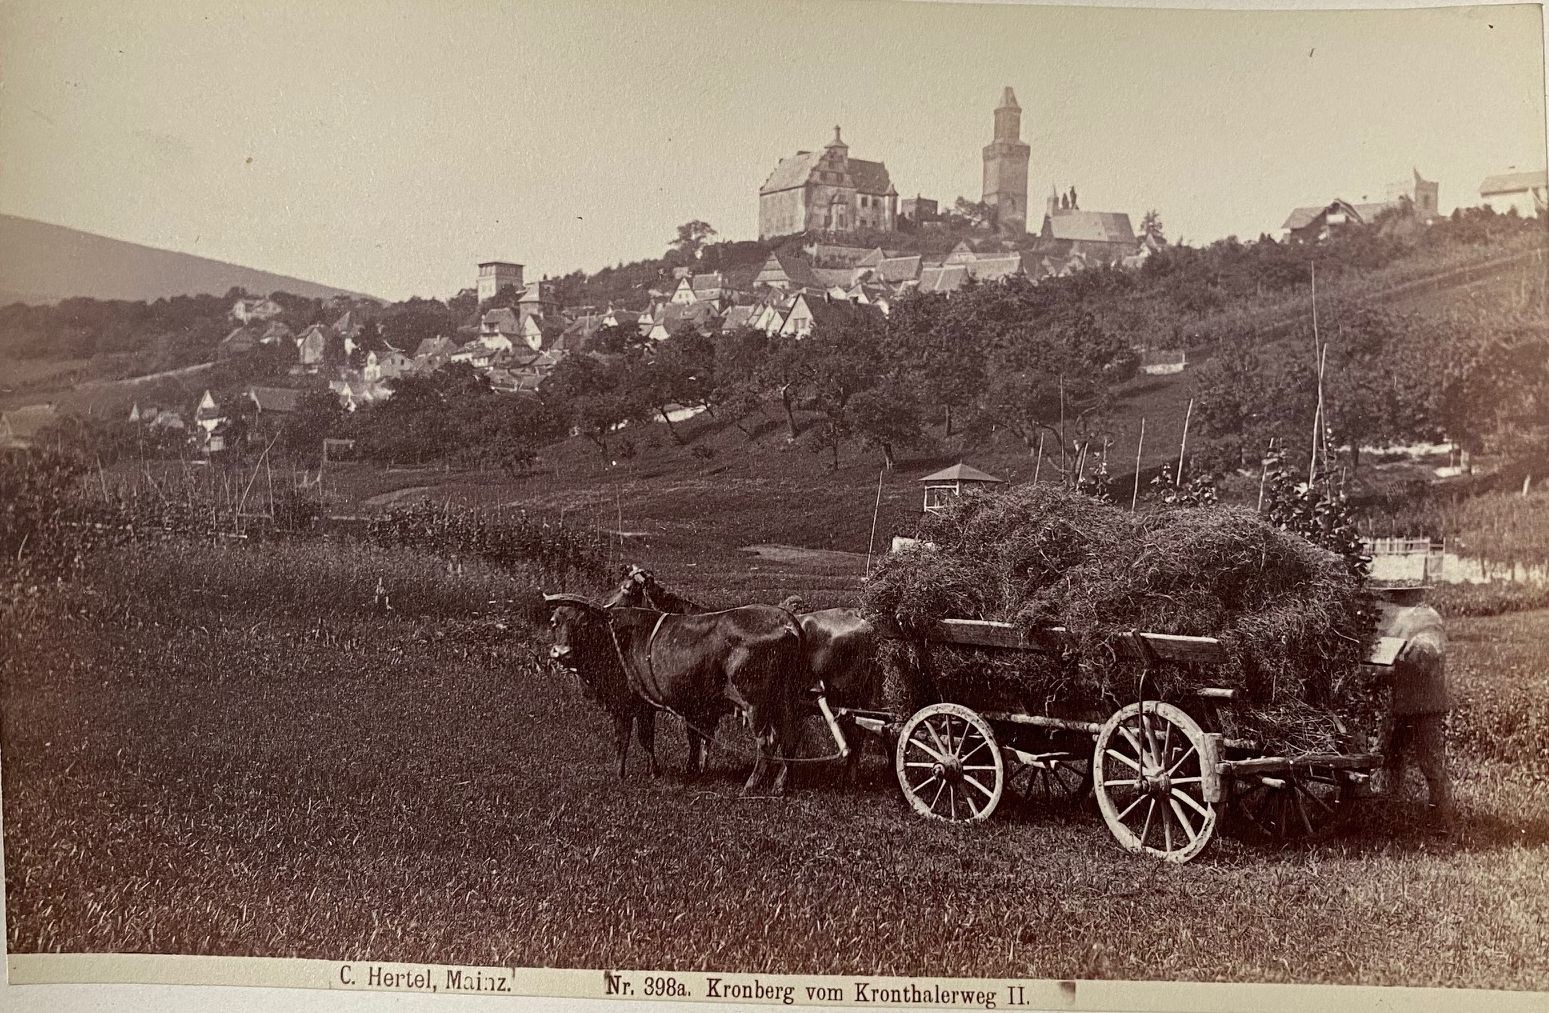 Fotografie, Carl Hertel No. 398a, Kronberg vom Kronthalerweg II, ca. 1885 (Taunus-Rhein-Main - Regionalgeschichtliche Sammlung Dr. Stefan Naas CC BY-NC-SA)